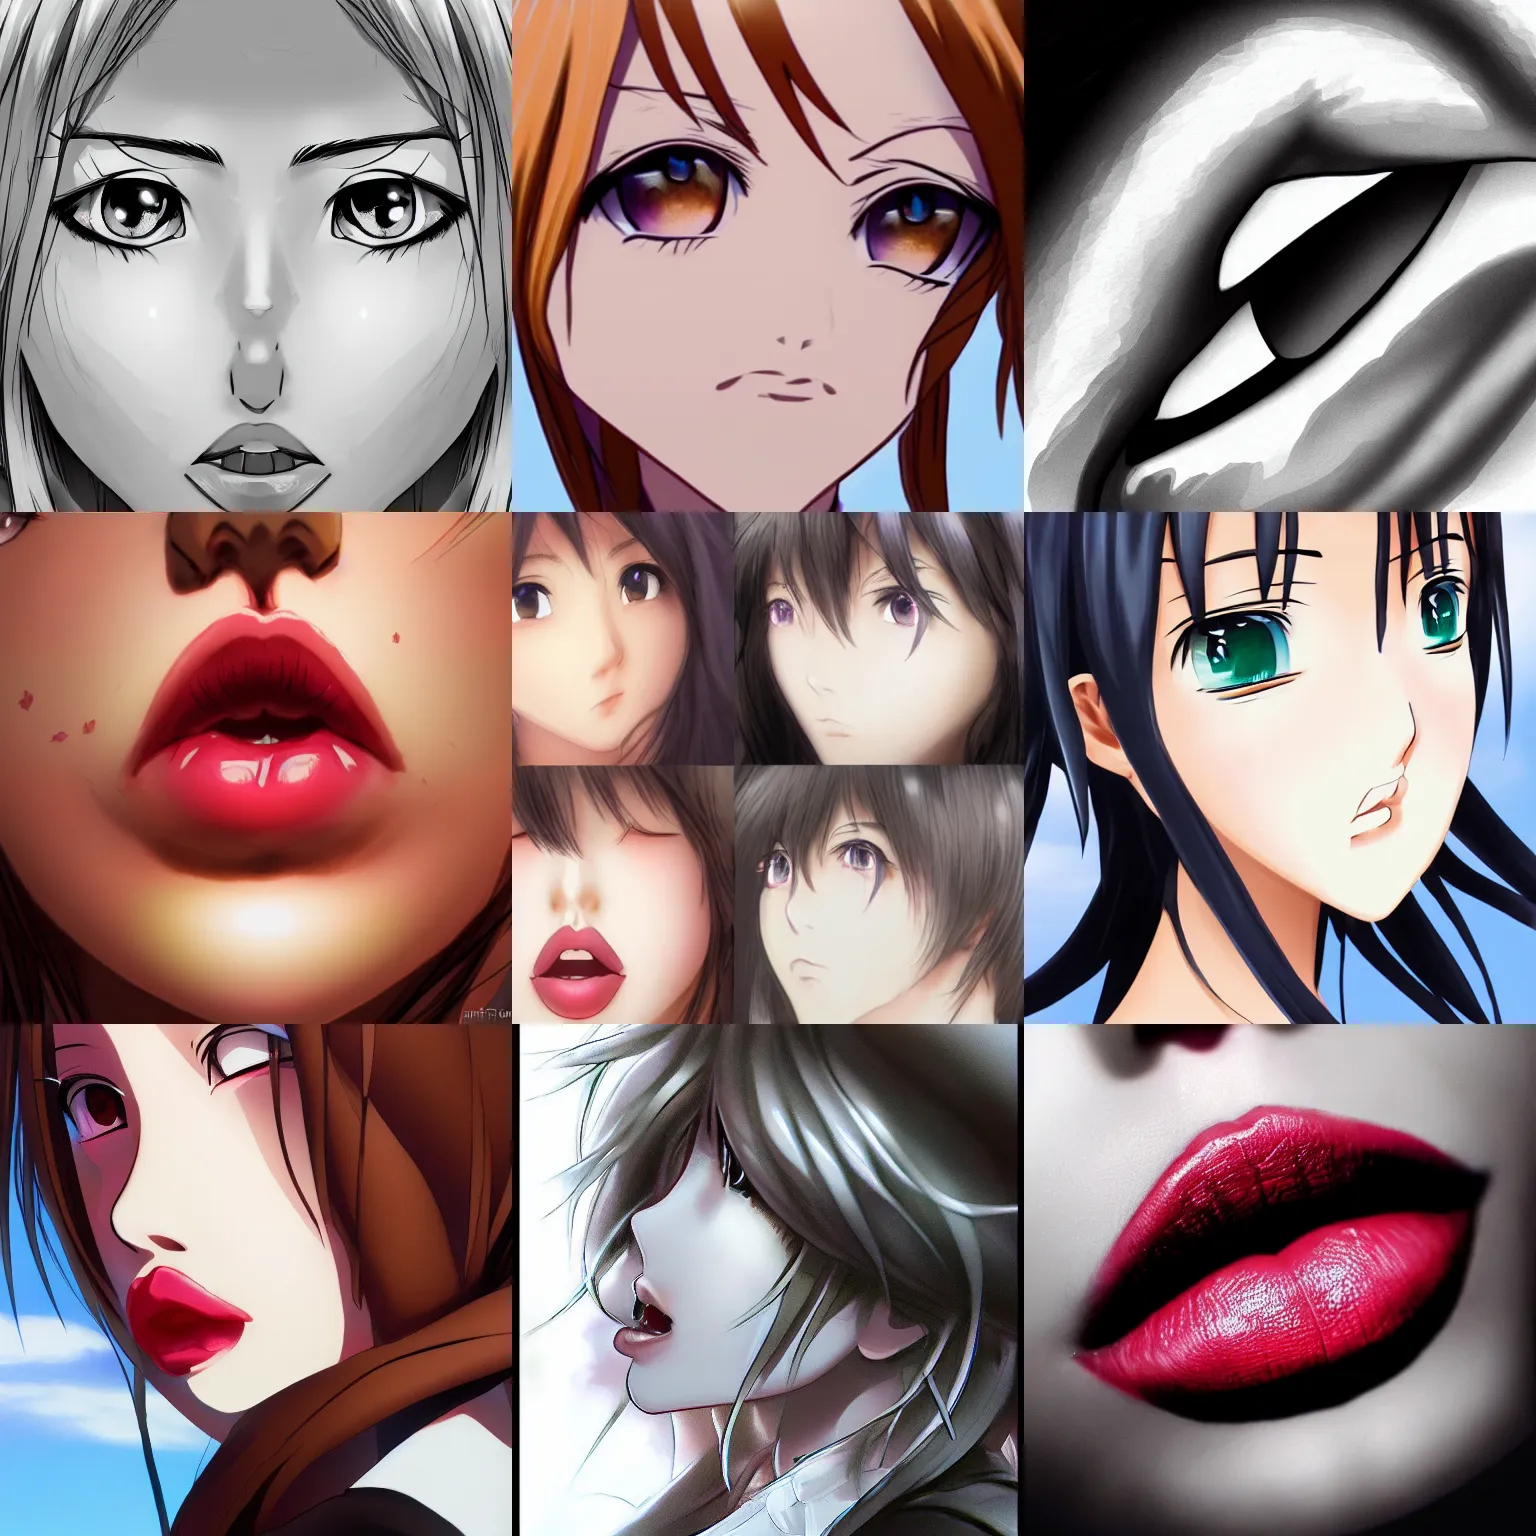 Details 83 Anime Lips Female Super Hot Vn 1823